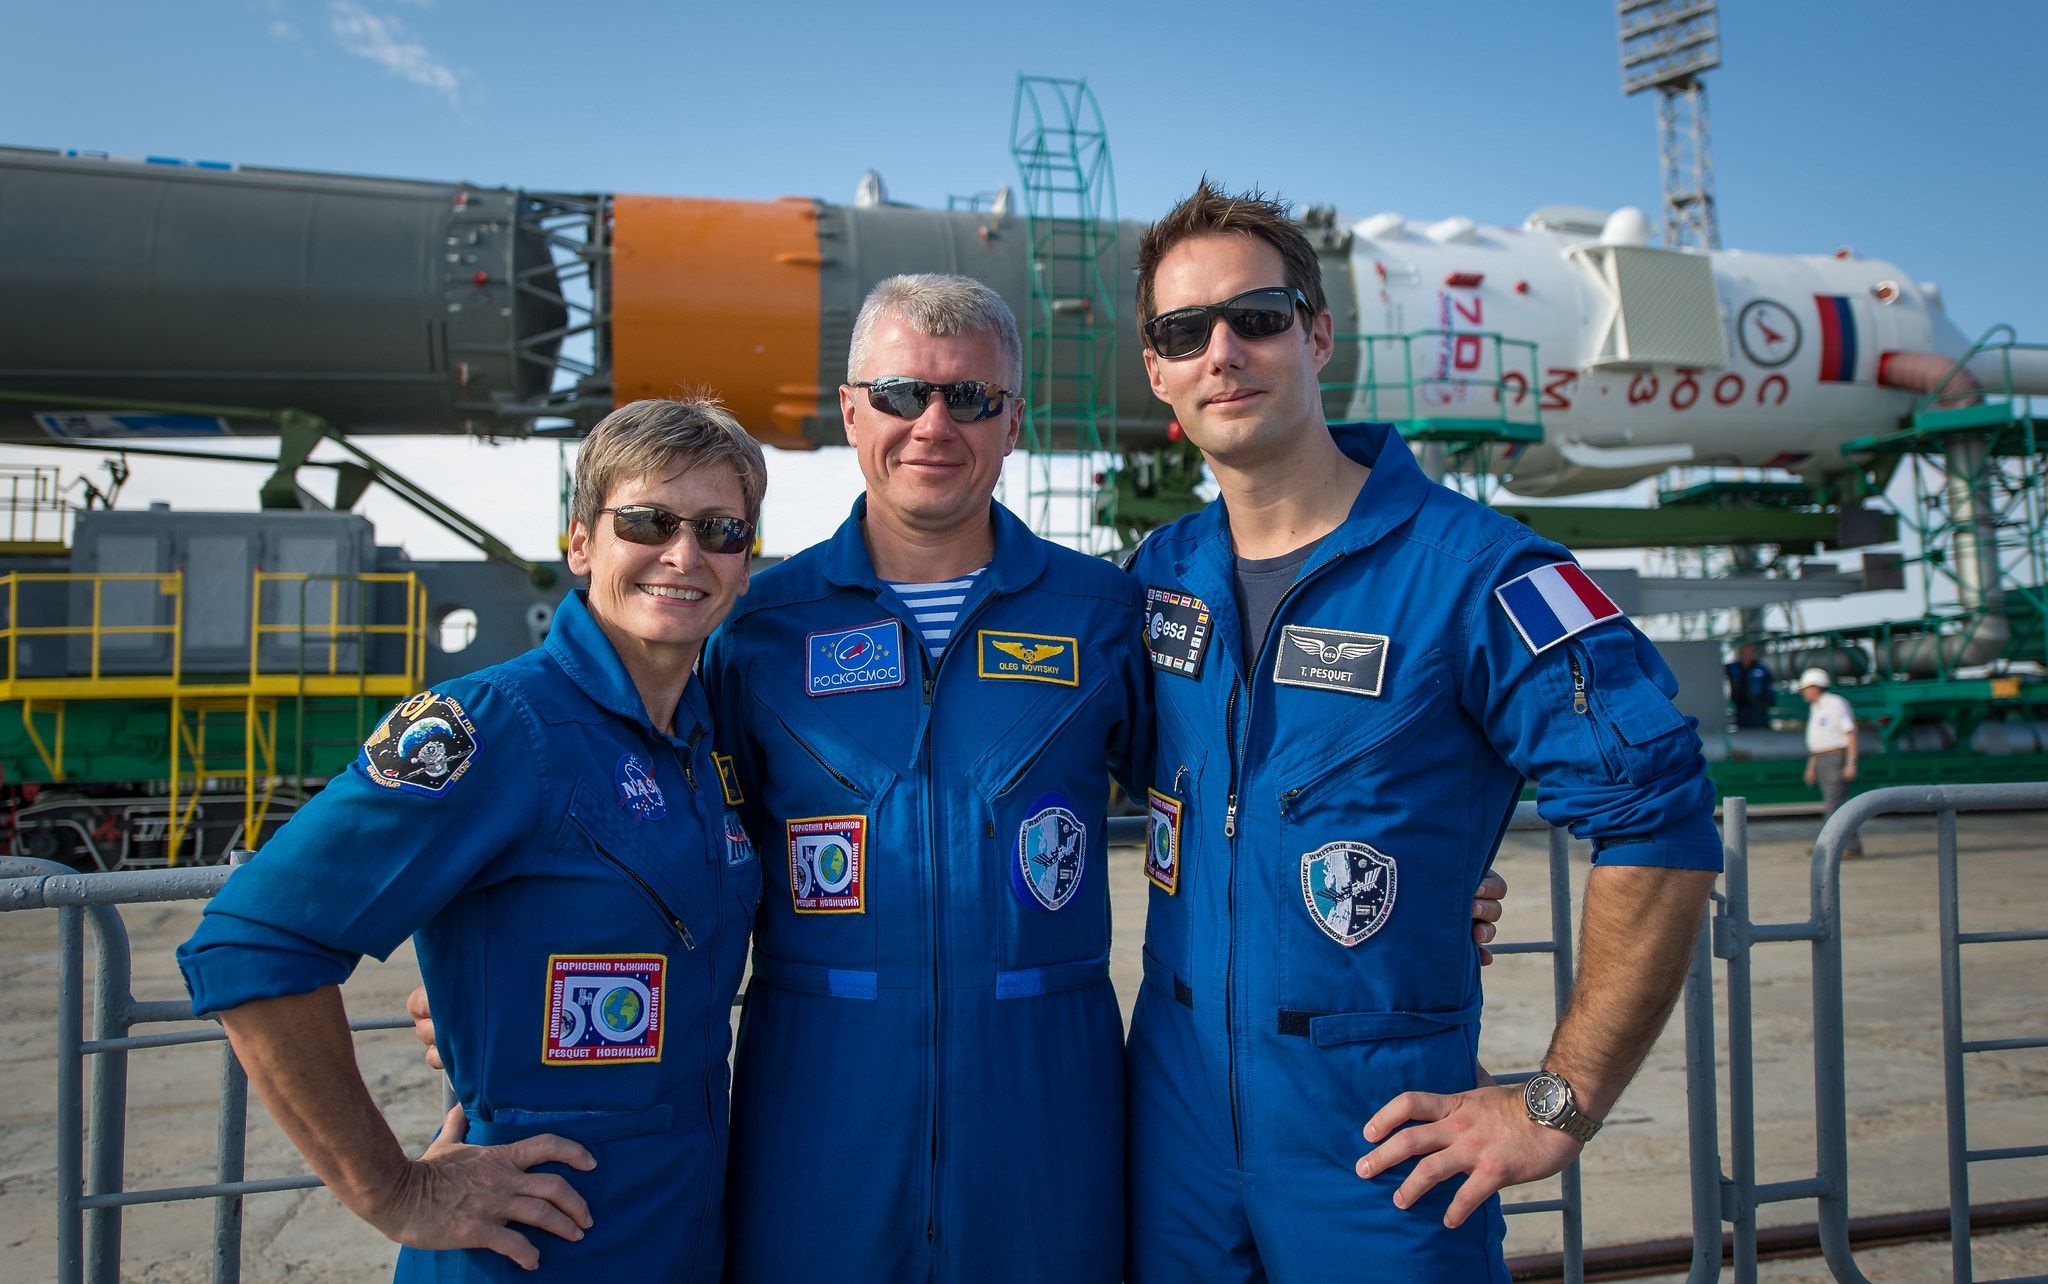 Les membres de l'équipage du Soyouz MS-03 : Peggy Whitson (NASA), Oleg Novitskyi (Roscosmos) et Thomas Pesquet (ESA), lors du déplacement de la fusée Soyouz pour le lancement du Soyouz MS-01 en juillet 2016. Ils étaient alors équipage de secours. (Crédit : NASA/Bill Ingalls)